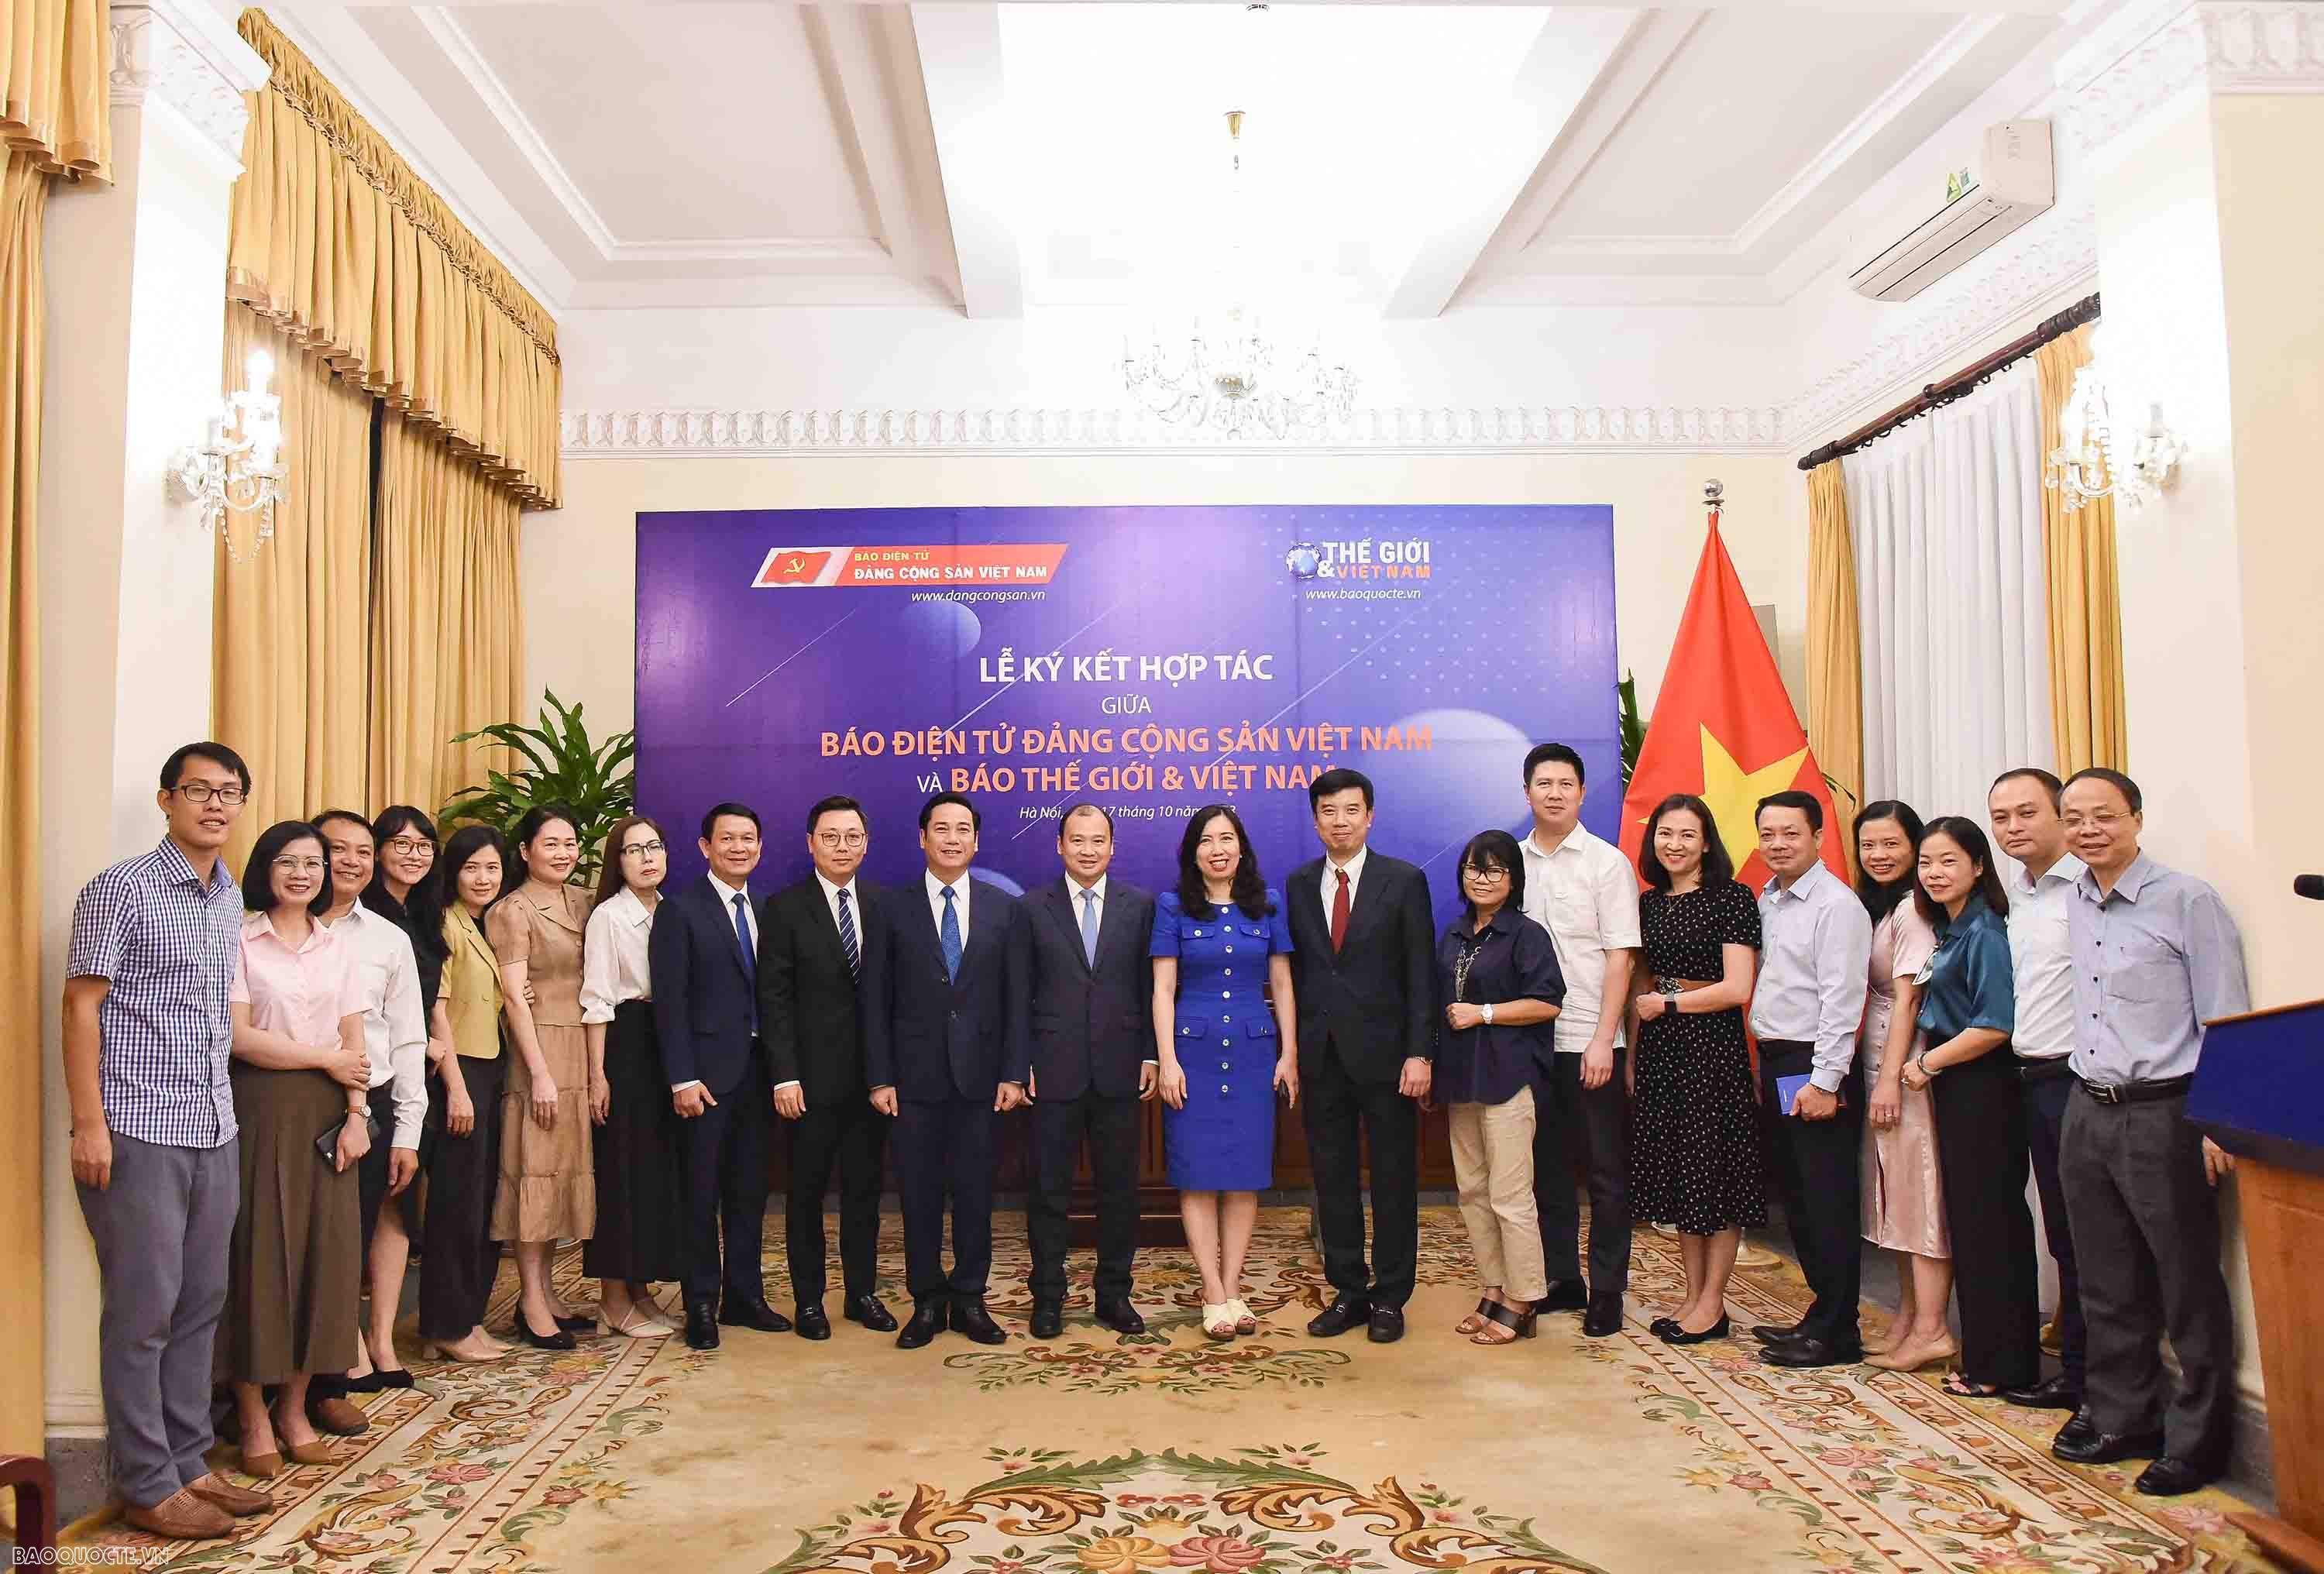 Báo Thế giới và Việt Nam và Báo điện tử Đảng Cộng sản Việt Nam ký bản ghi nhớ hợp tác